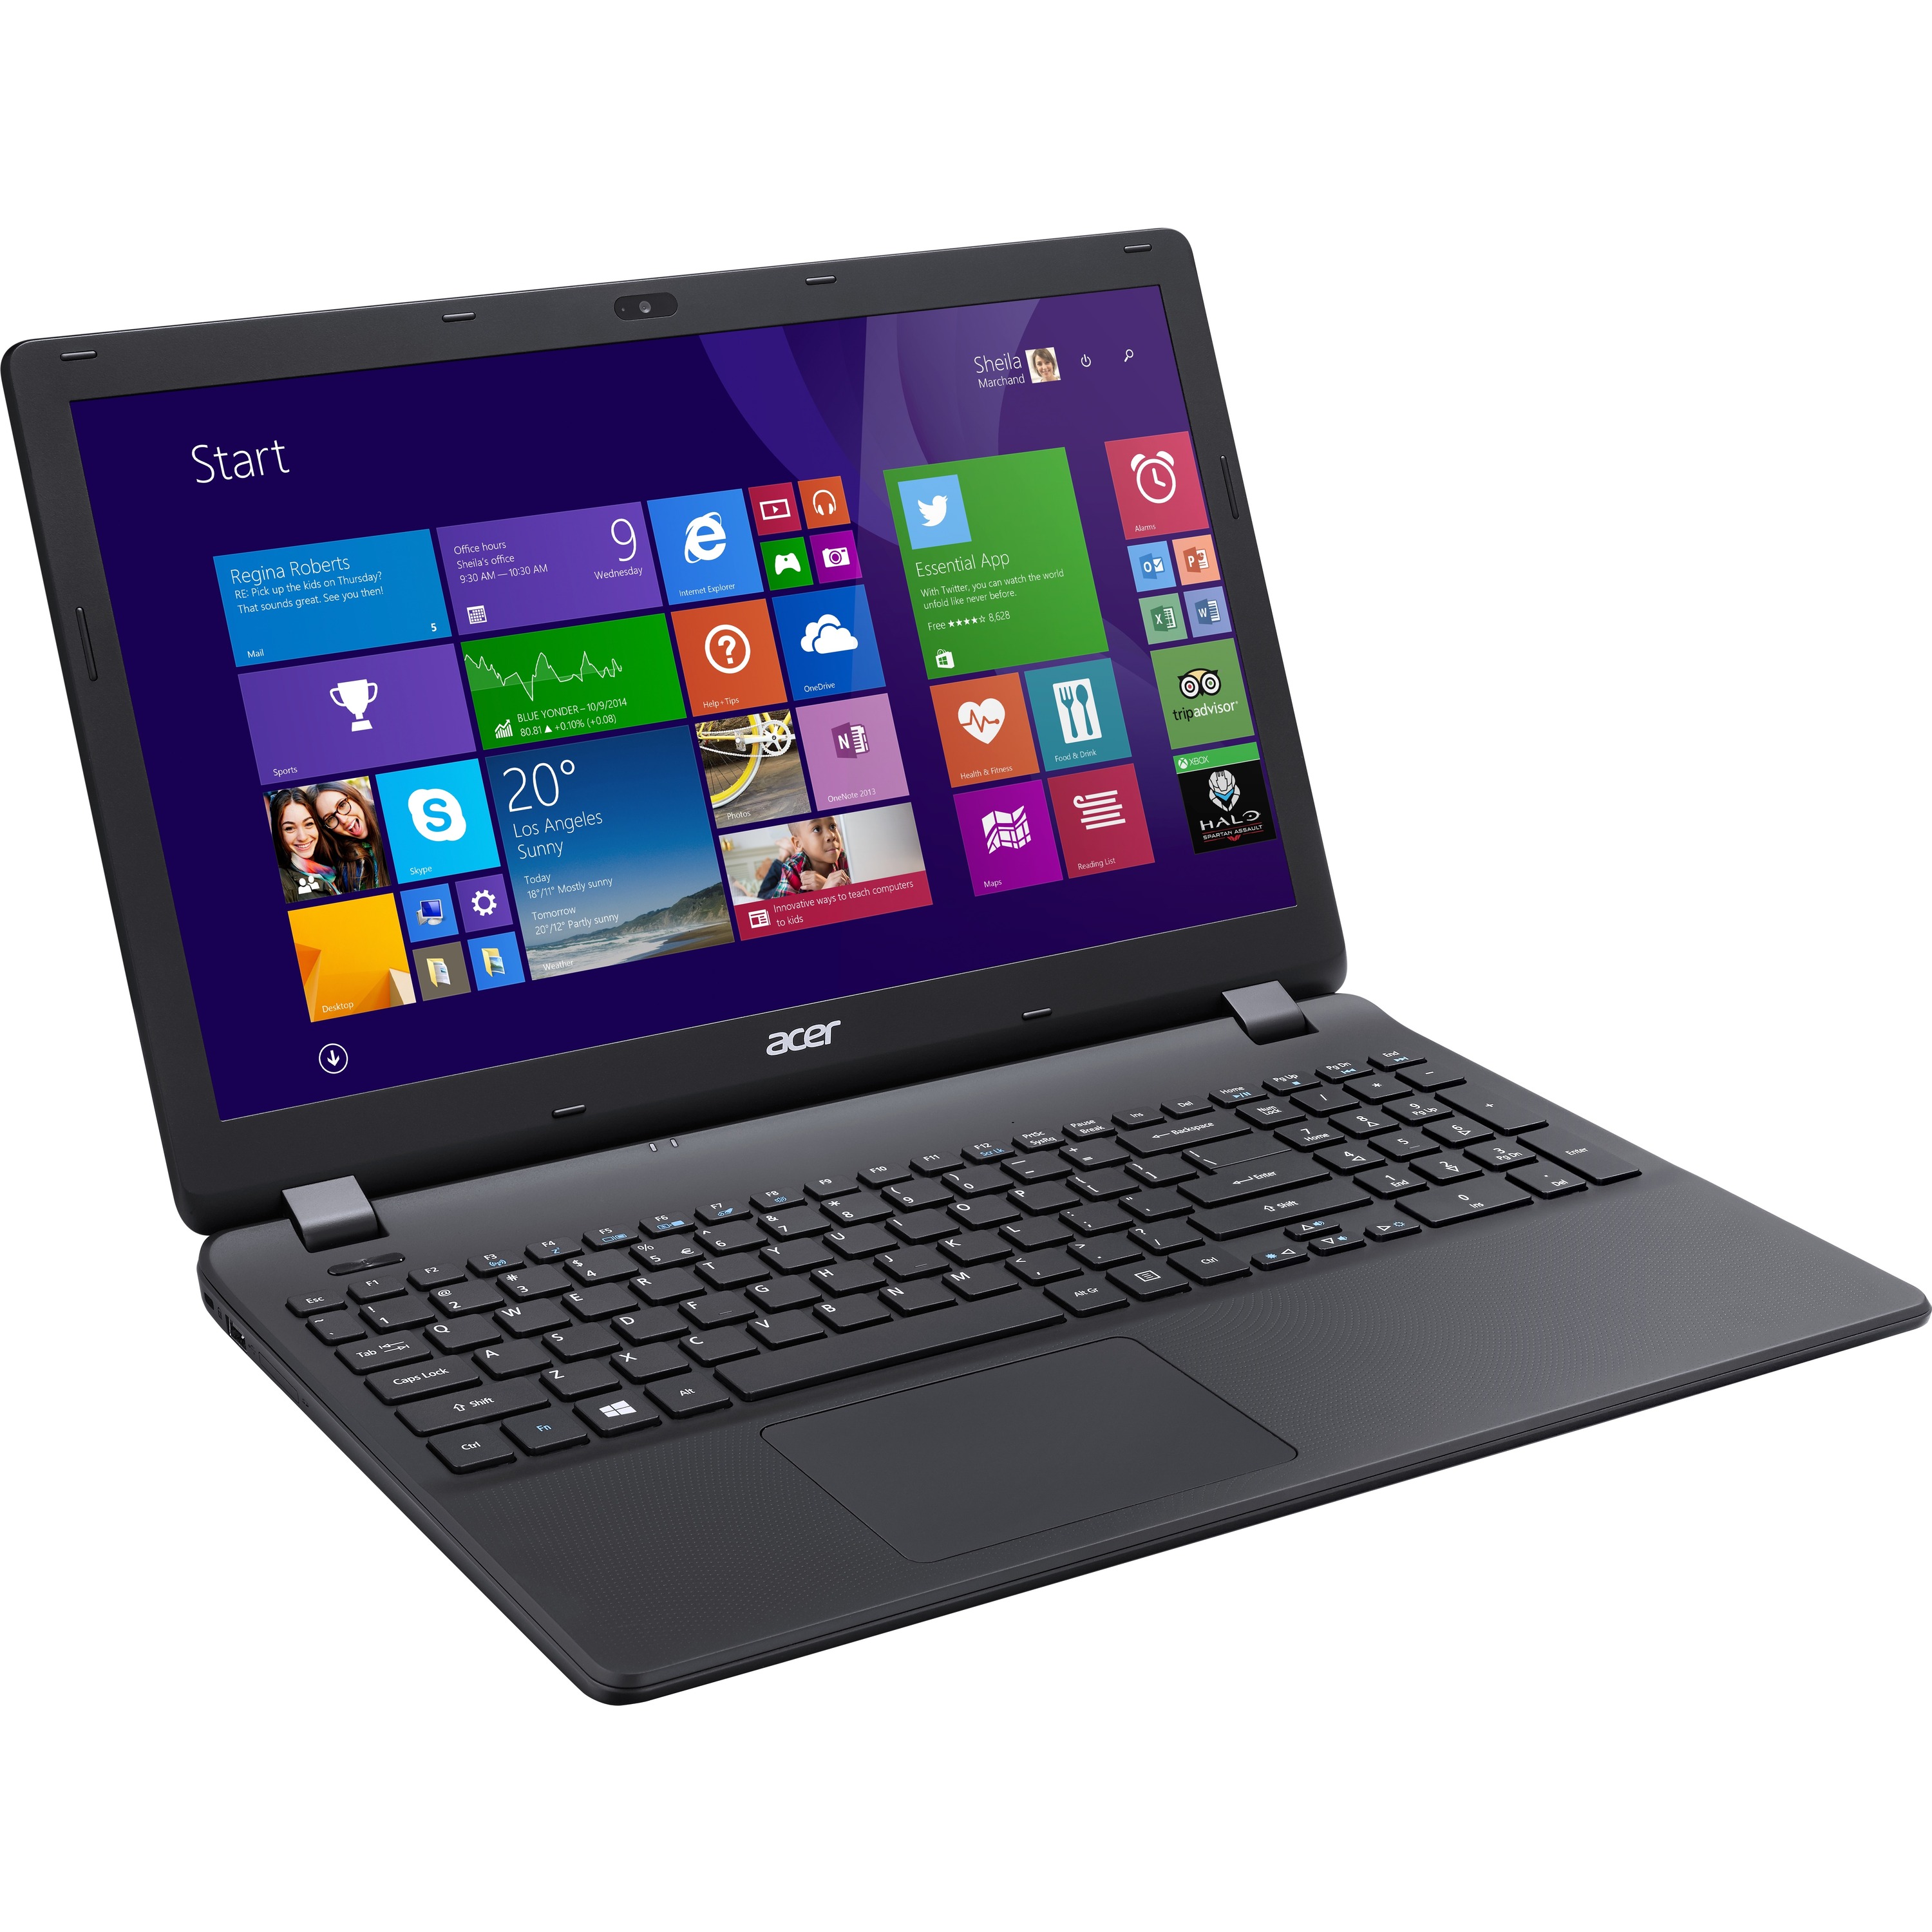 Acer Aspire Laptop Celeron N2840 Dual Core 216ghz 4gb Ram 500gb Hdd Windows 81 Ebay 4668